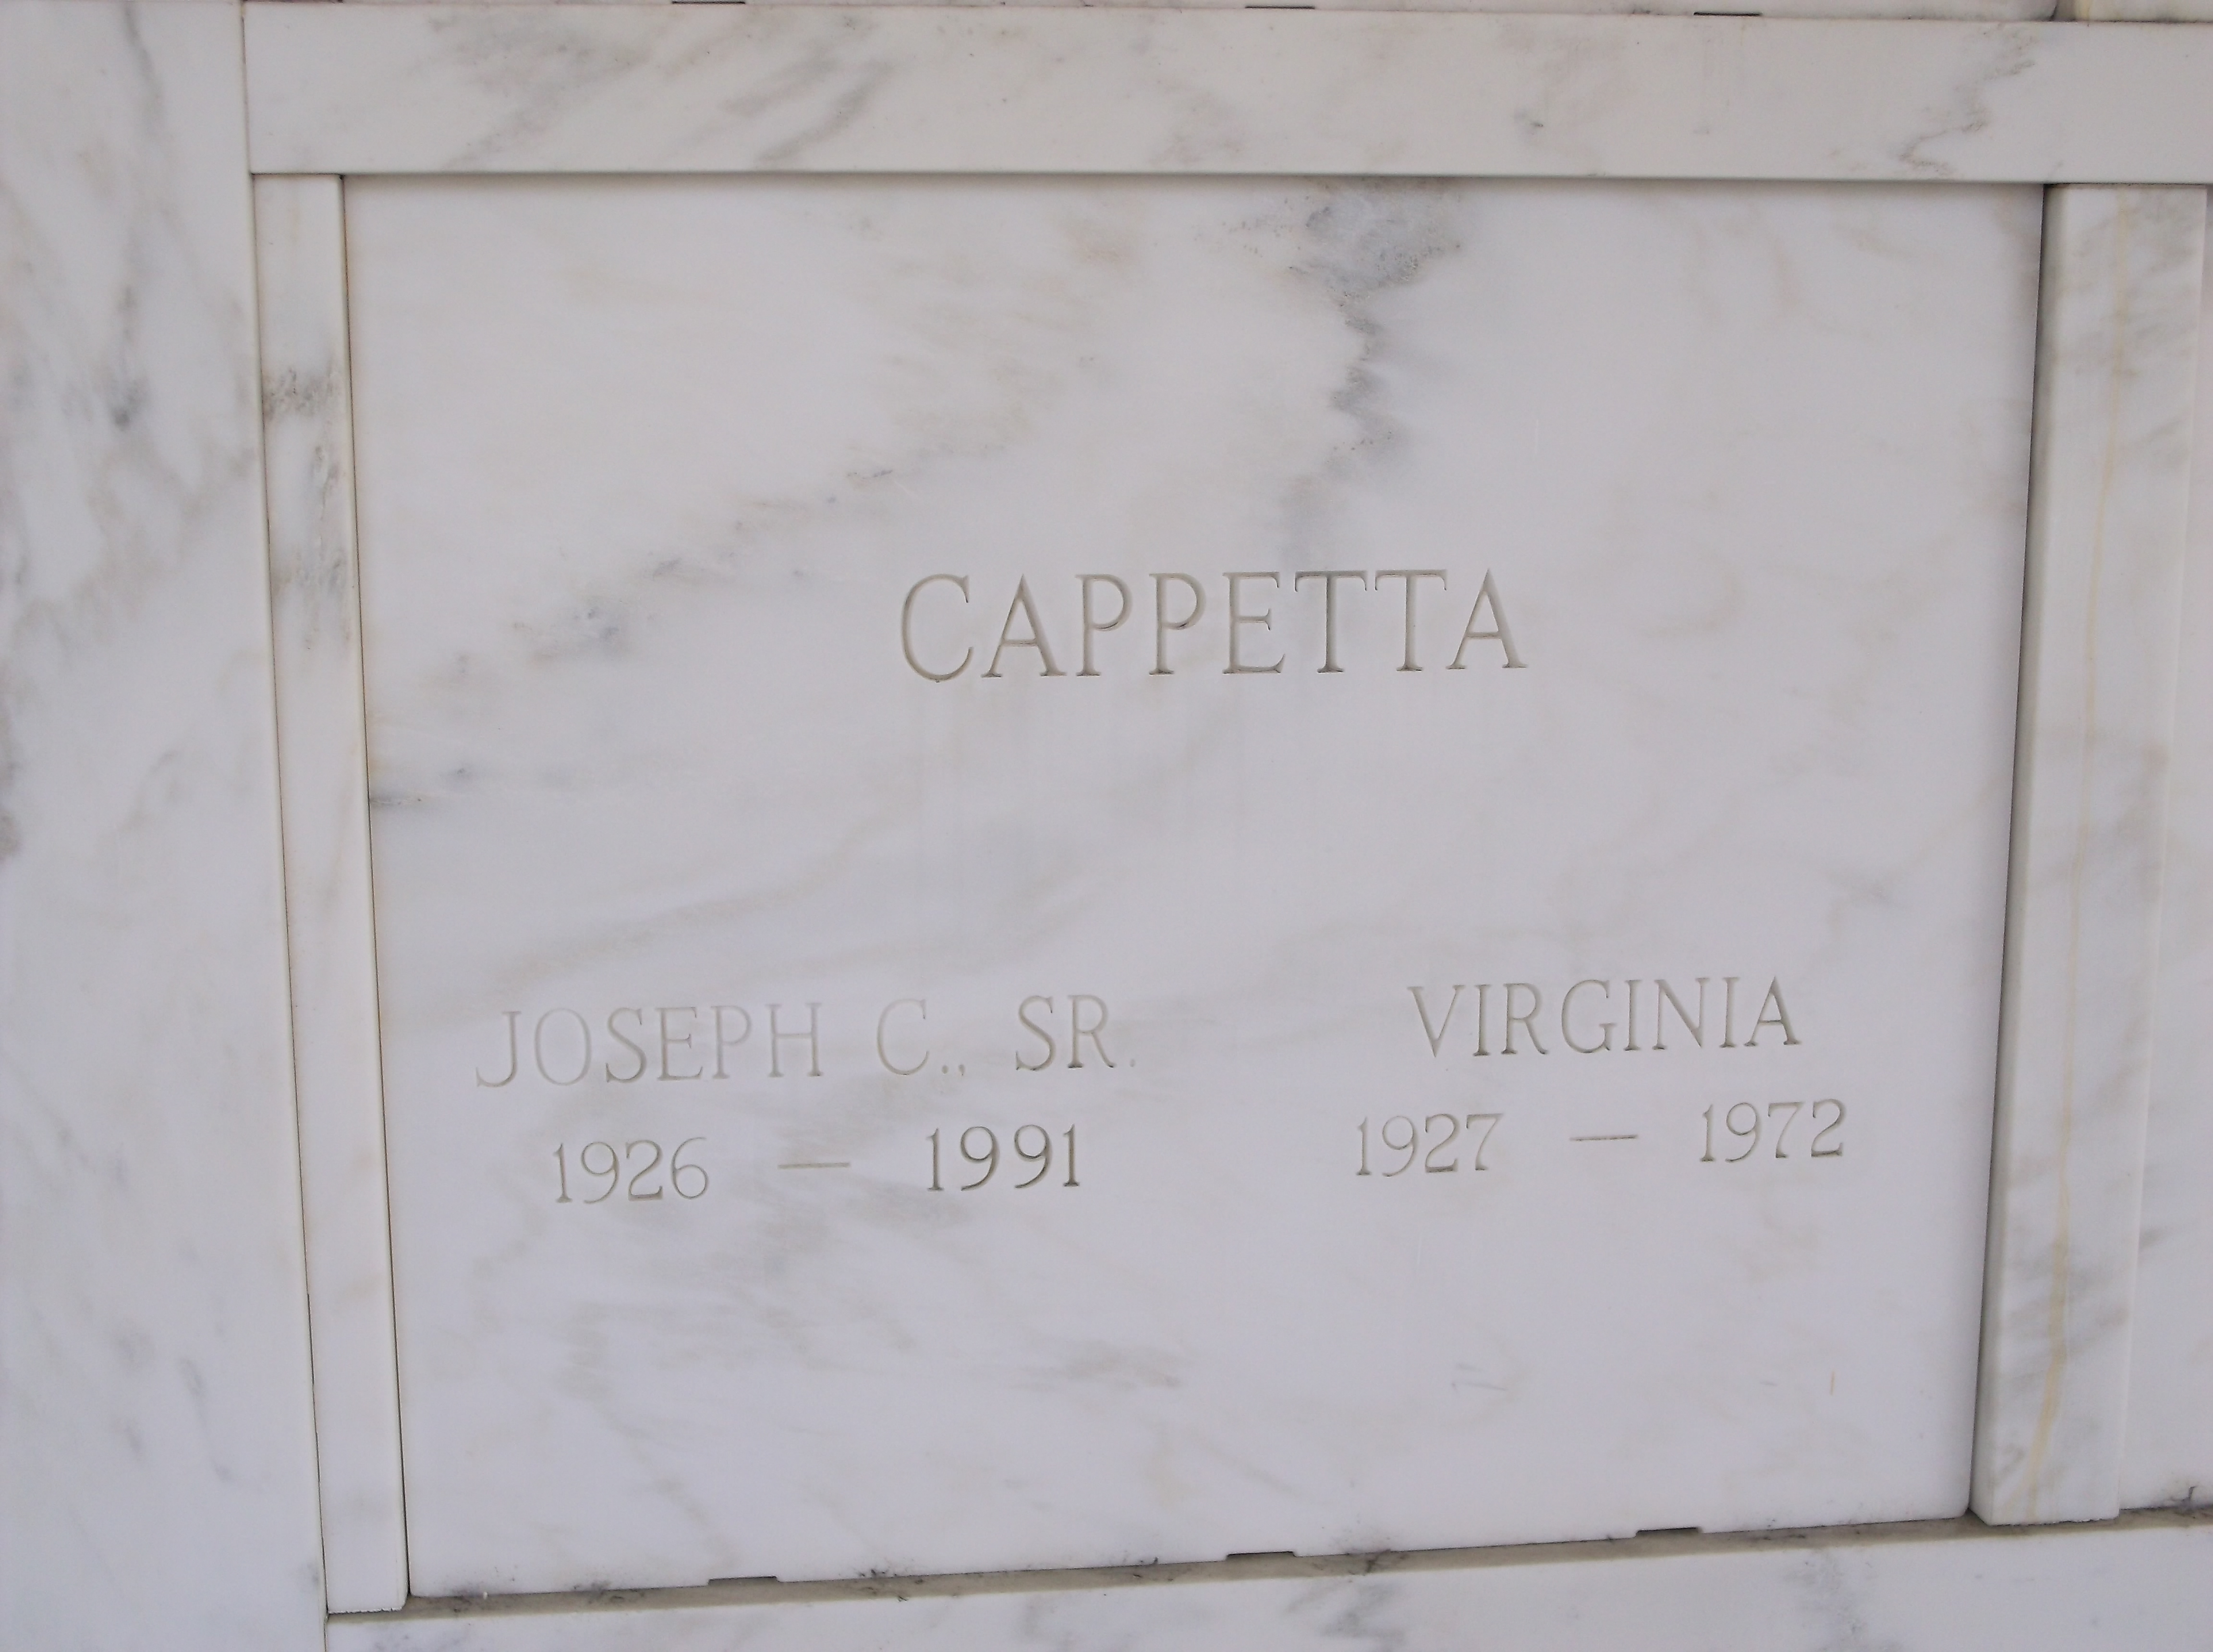 Virginia Cappetta